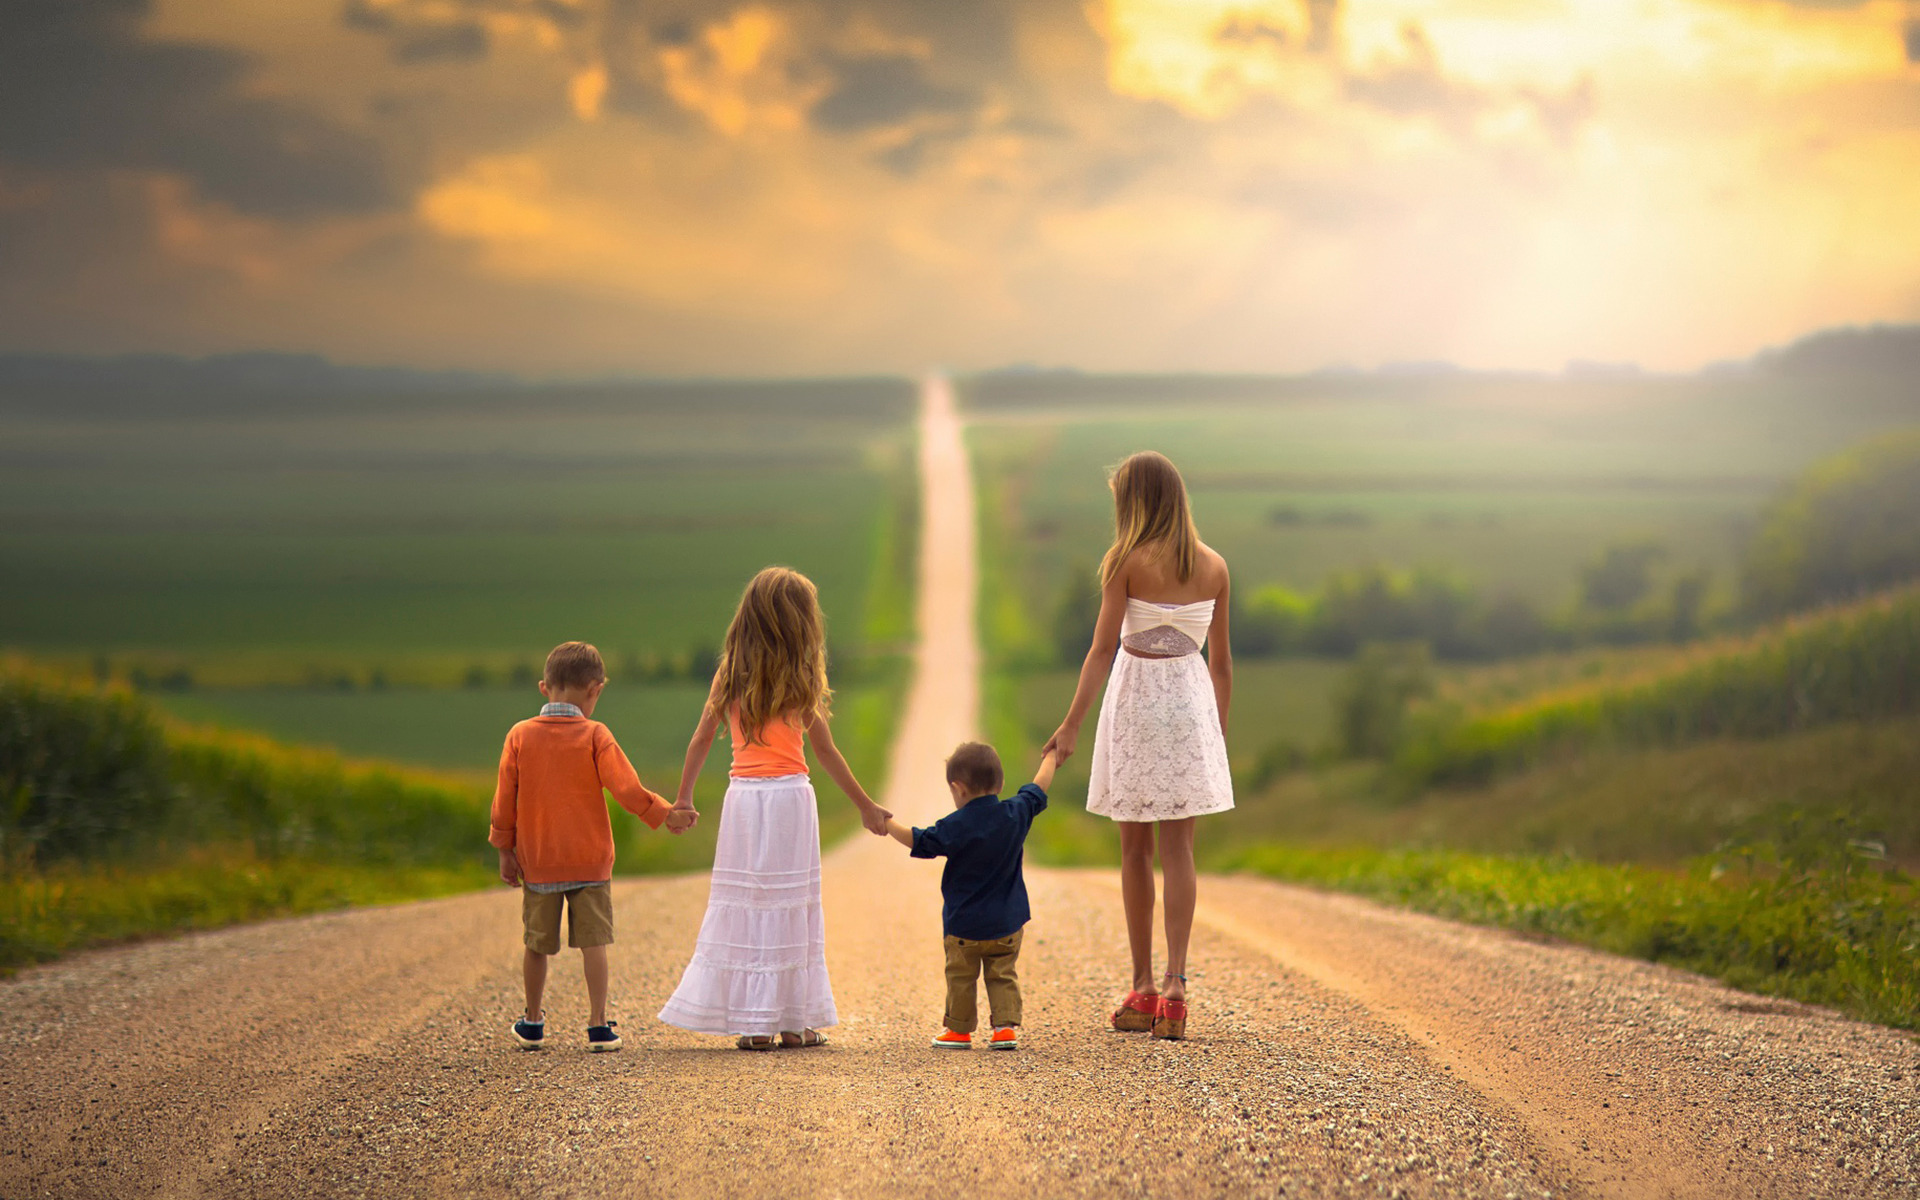 Дети счастливой дороги. Счастливое будущее детей. Счастливая дорога. Счастливая семья идет по дороге. Дети идут по дороге.